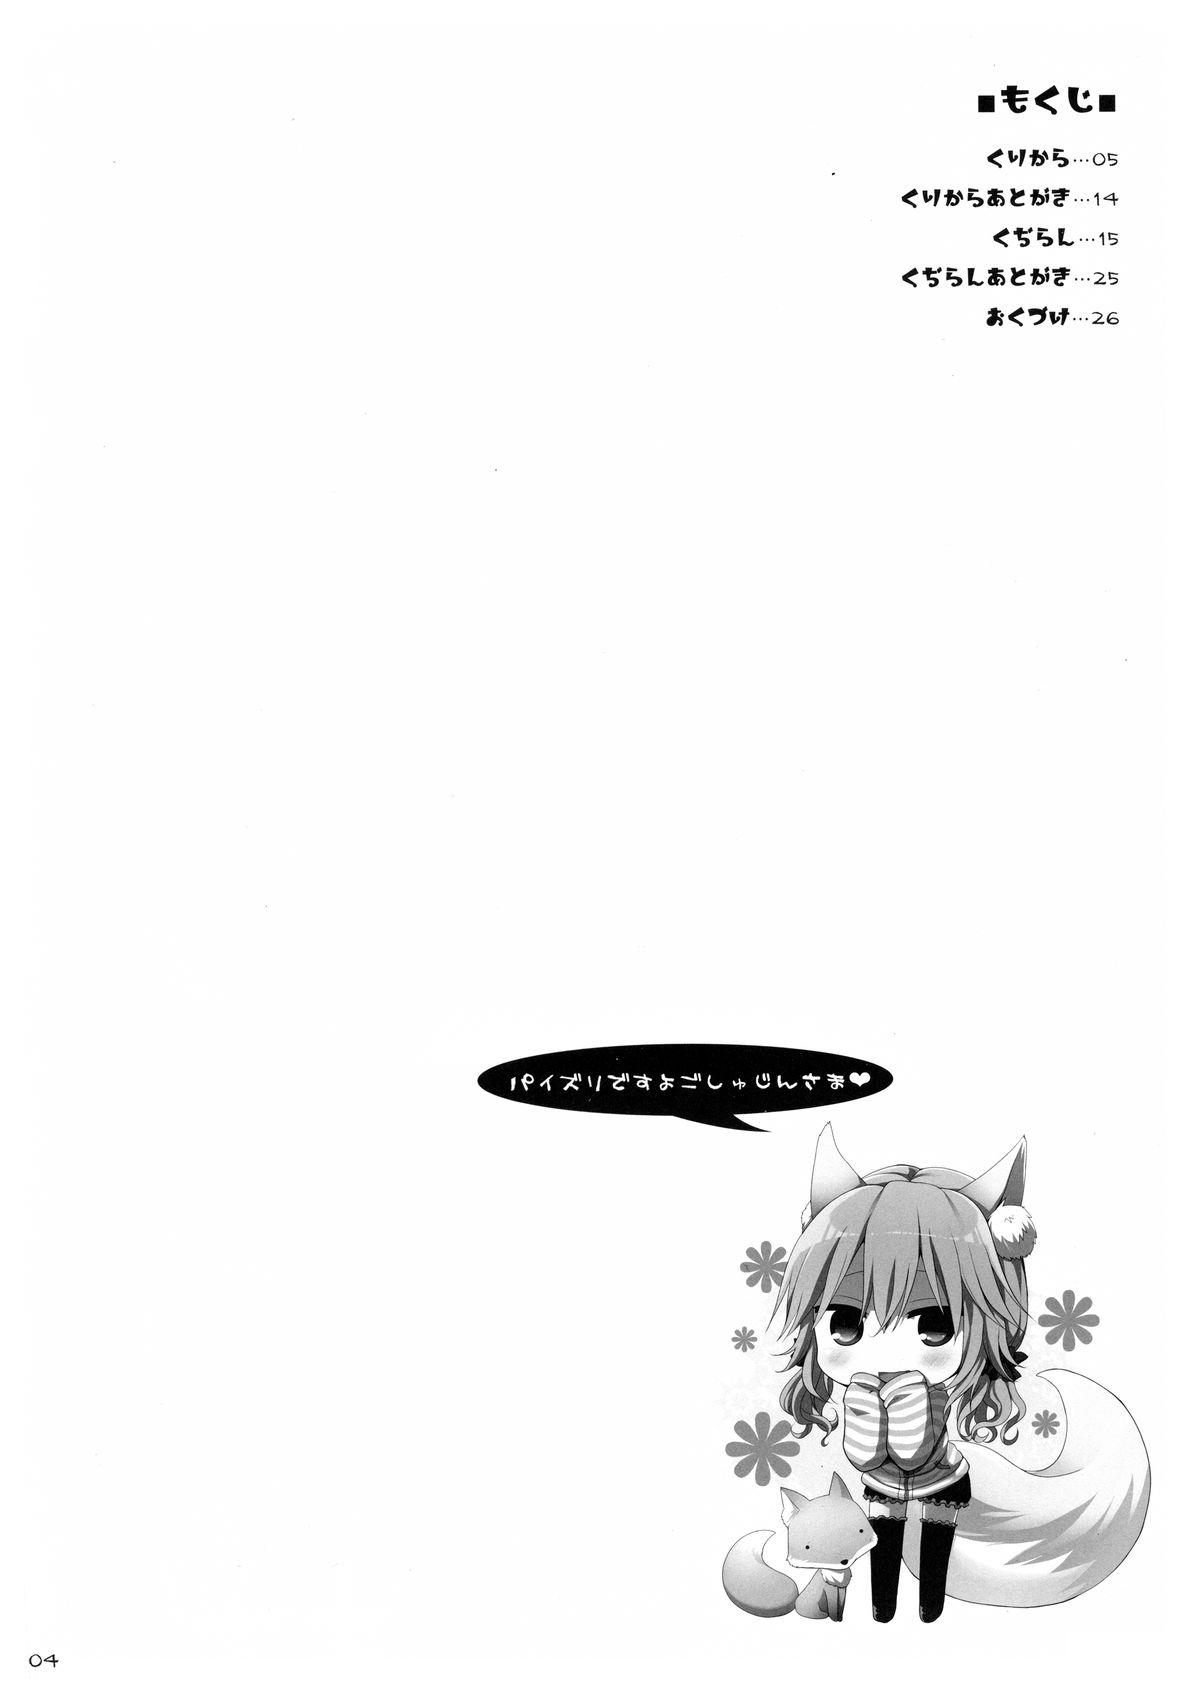 Nylon Goshujin-sama Oppai desu yo!! 3 - Fate extra Tia - Page 3